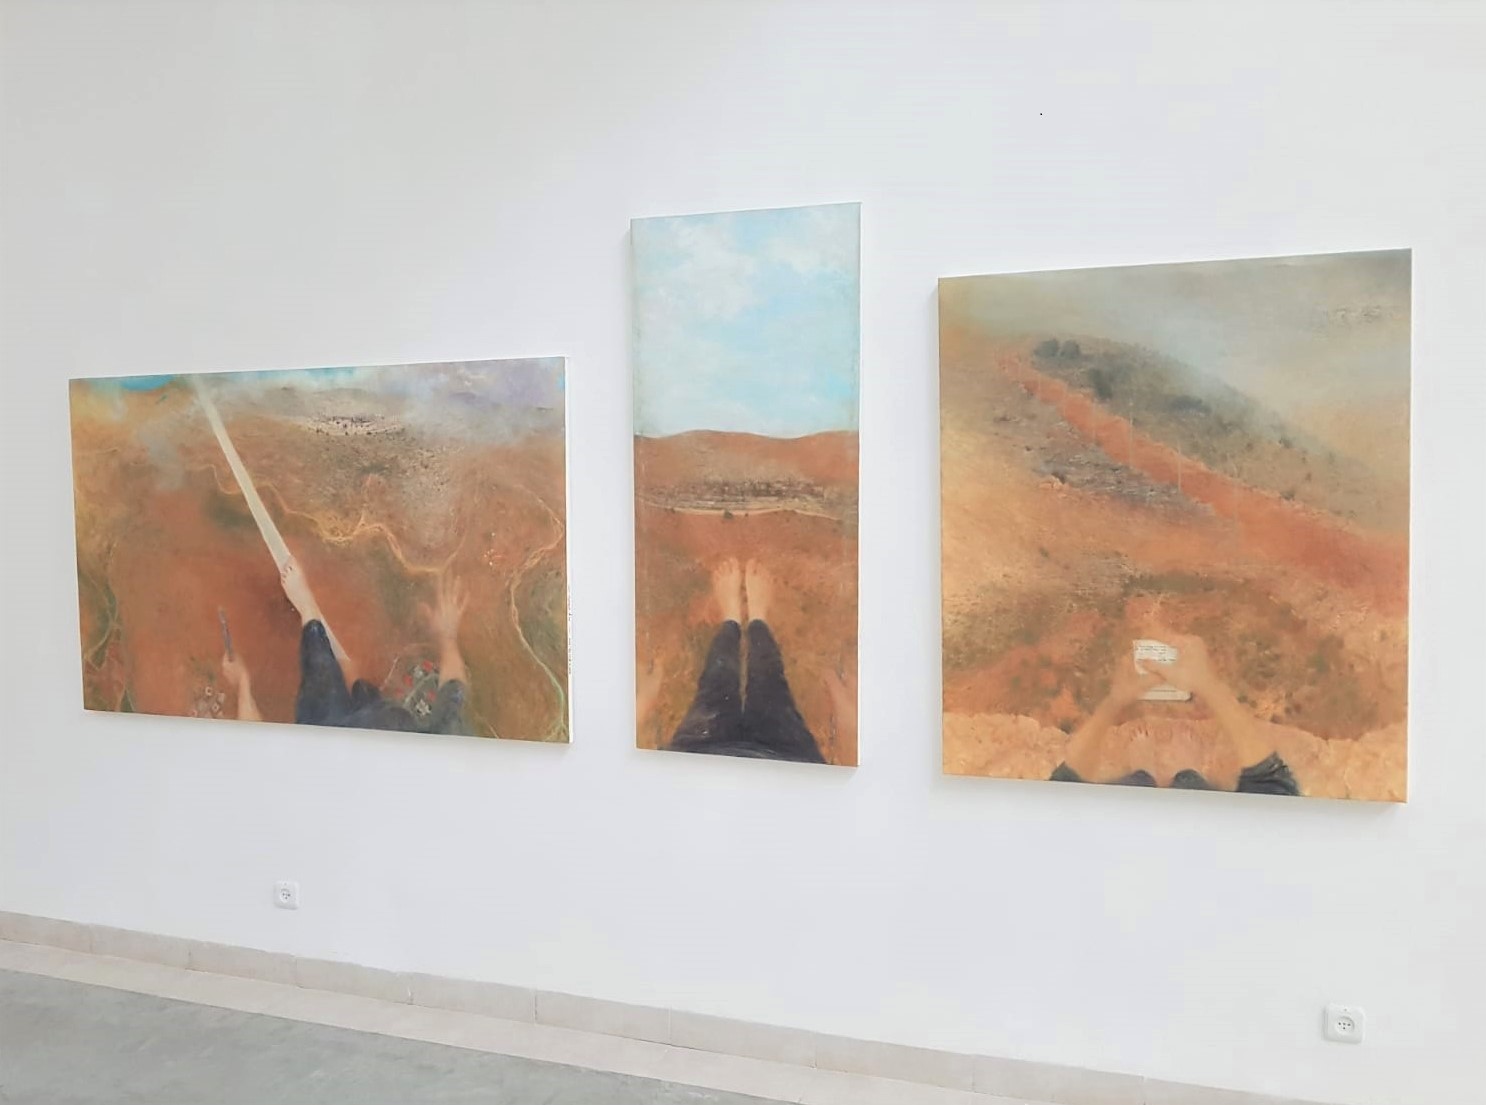 התערוכה שדה ראיה, עבודות של רות קסטנבאום בן-דב